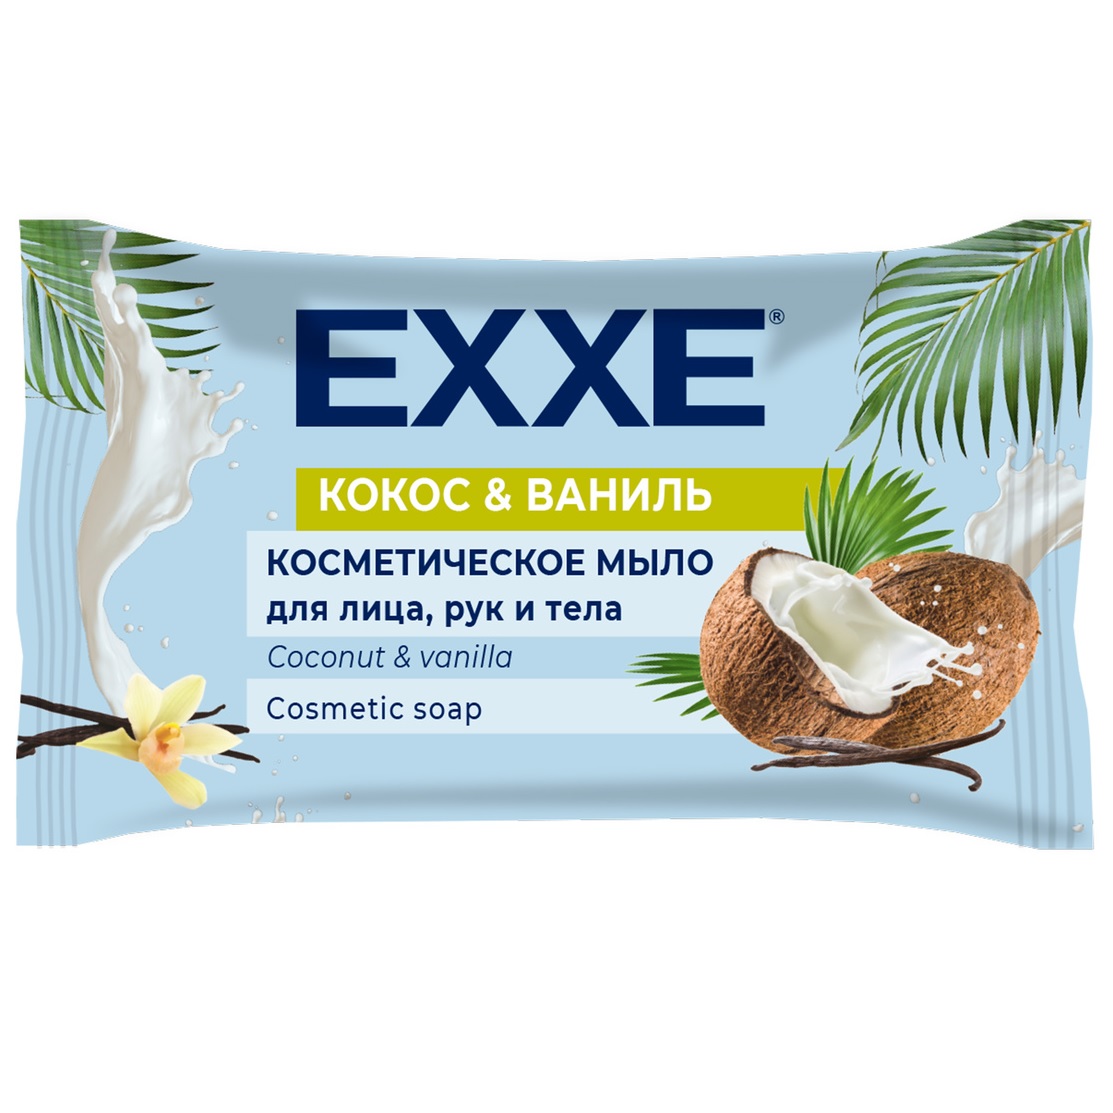 EXXE мыло 1*75г Кокос и Ваниль (флоу-пак) С0007380  эксе